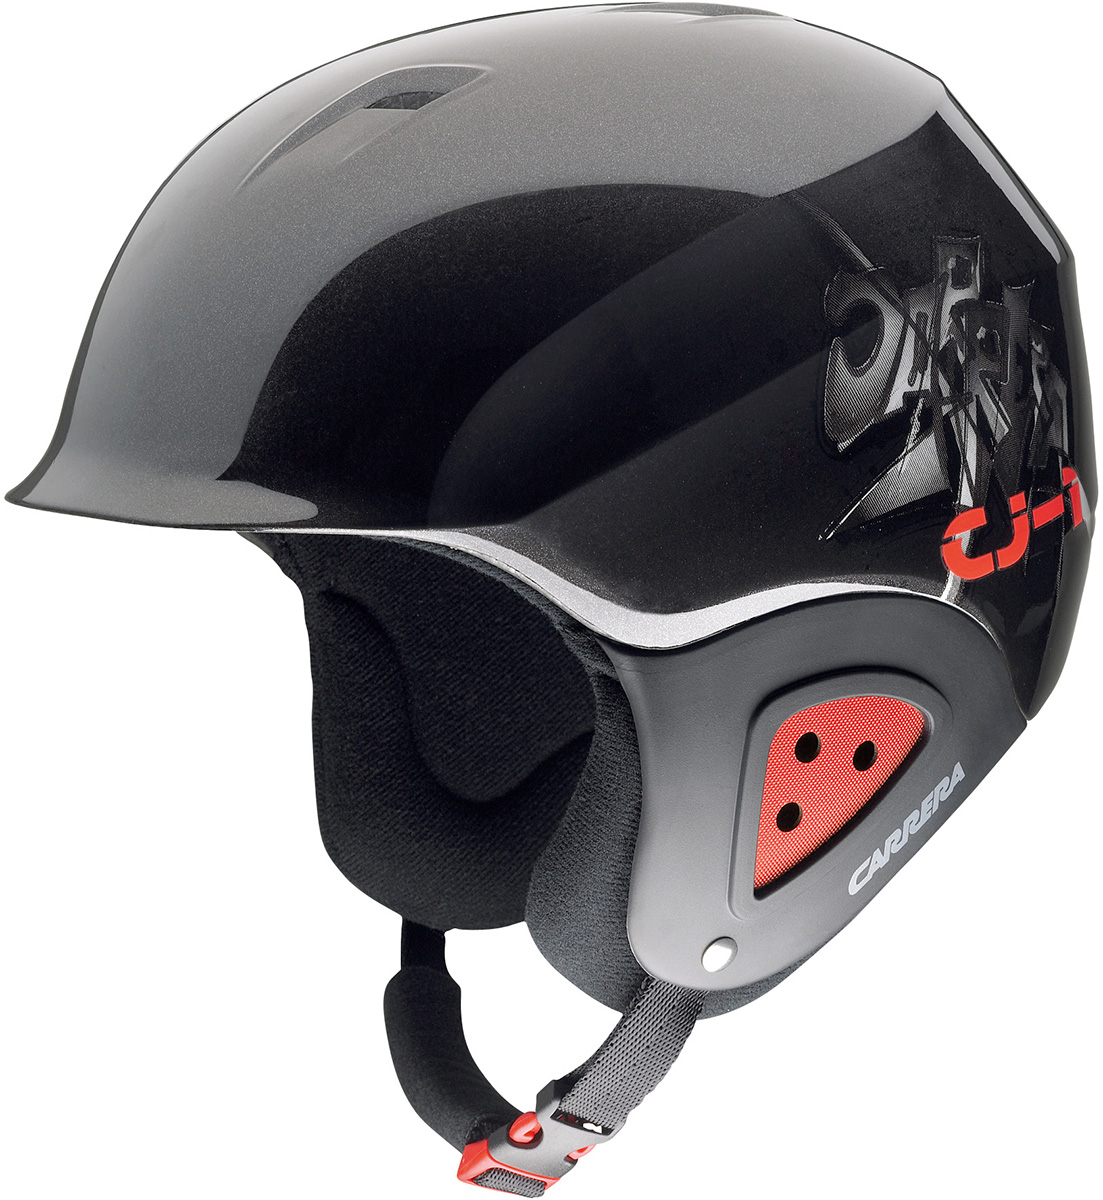 CJ-1 - Children's ski helmet